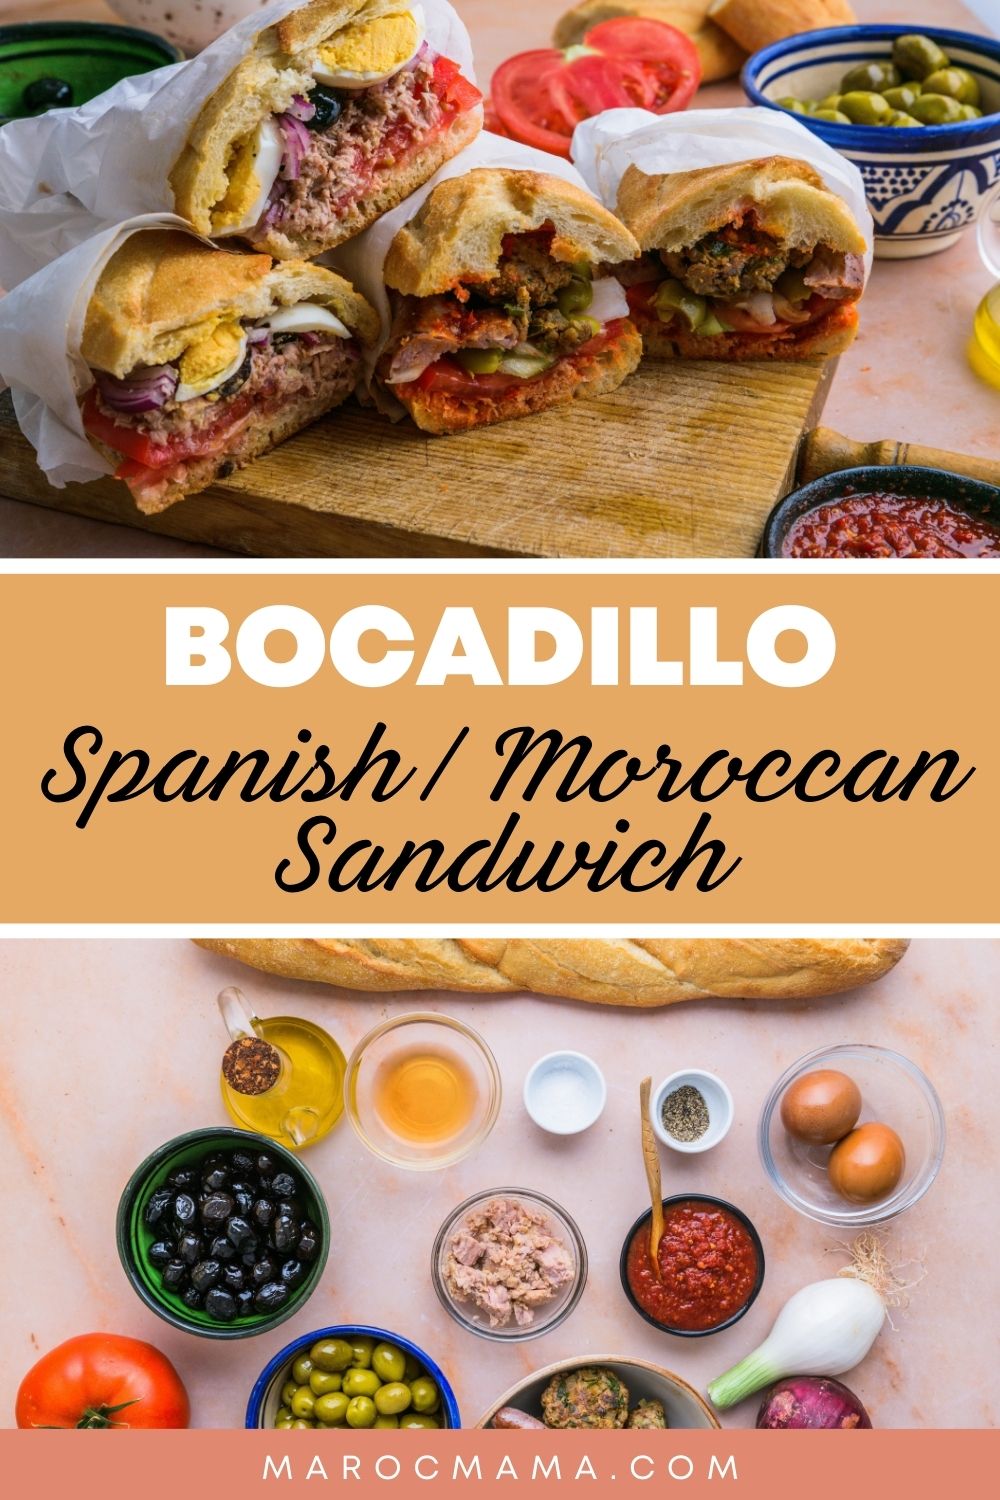 Our Favorite Sandwich: The Bocadillo!